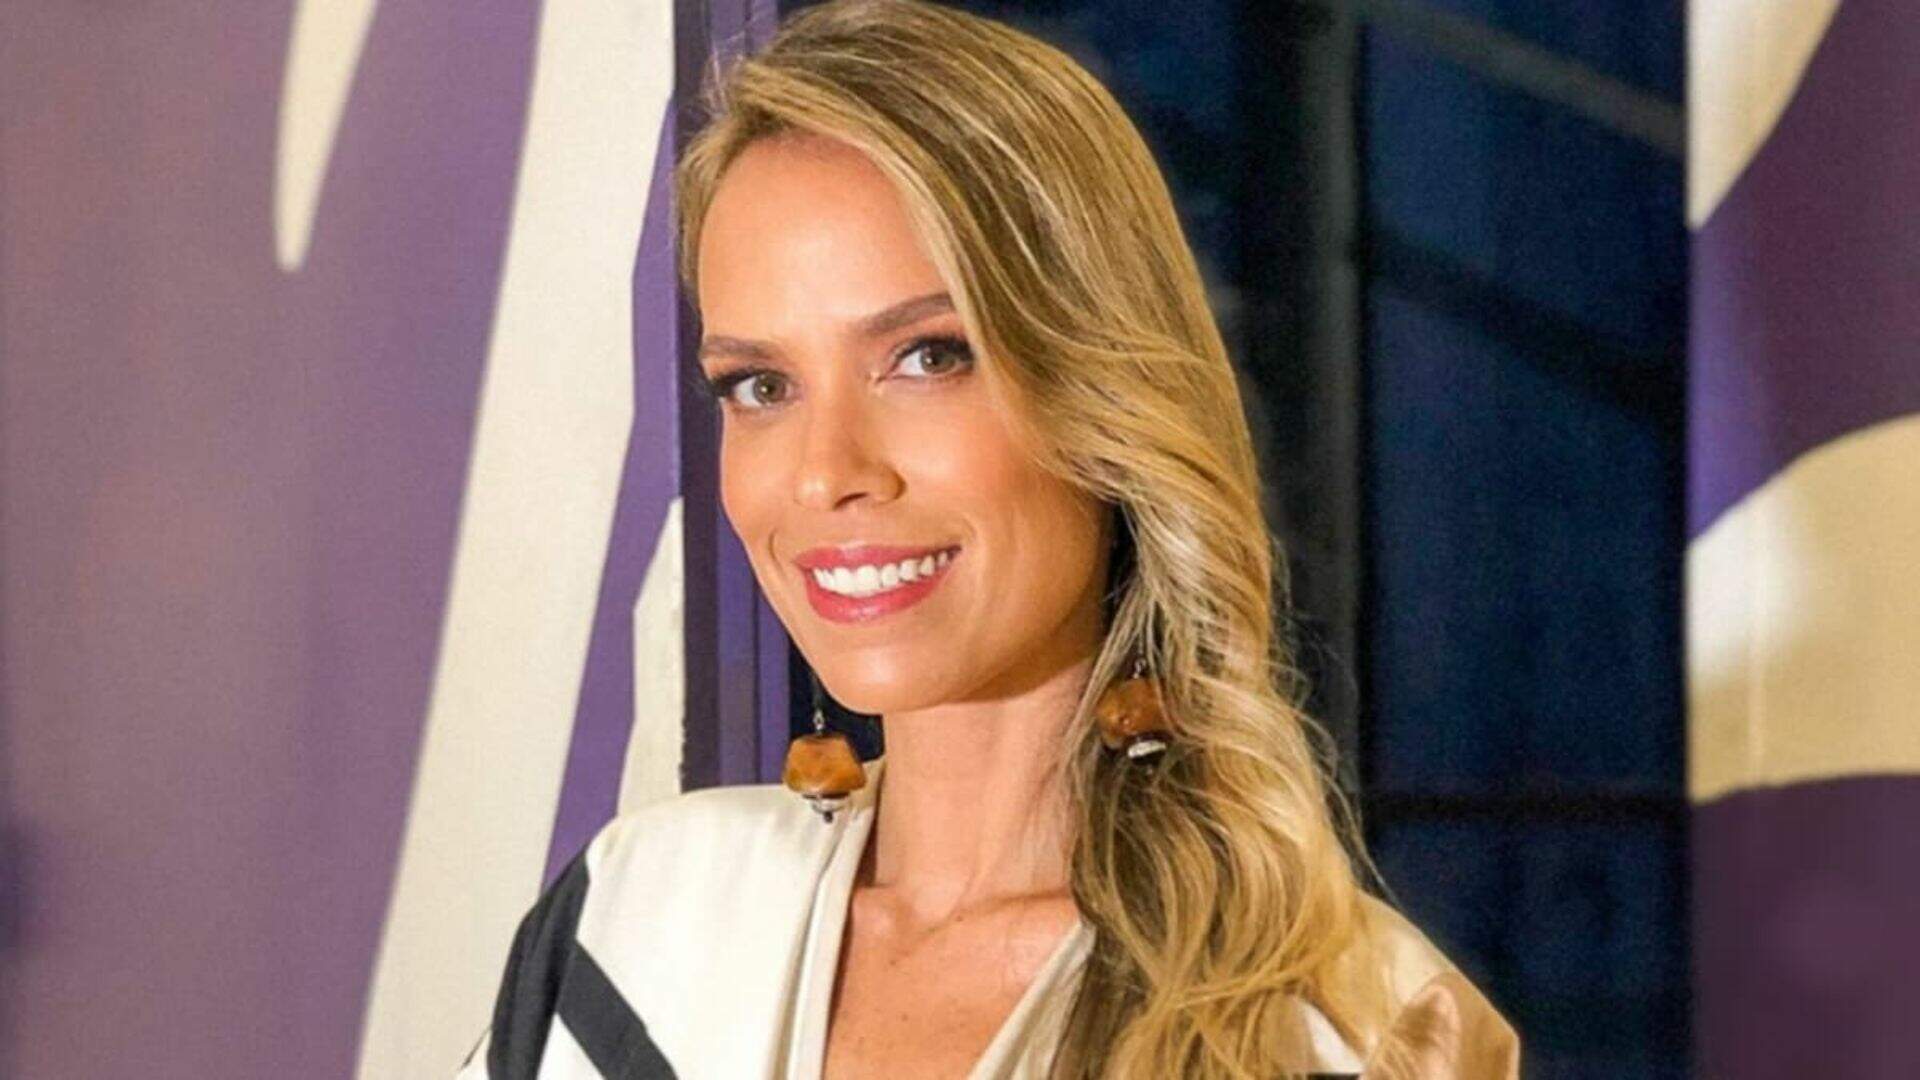 Lígia Mendes é uma apresentadora brasileira que ficou nacionalmente conhecida ao apresentar a primeira temporada de ídolos no SBT em 2006 